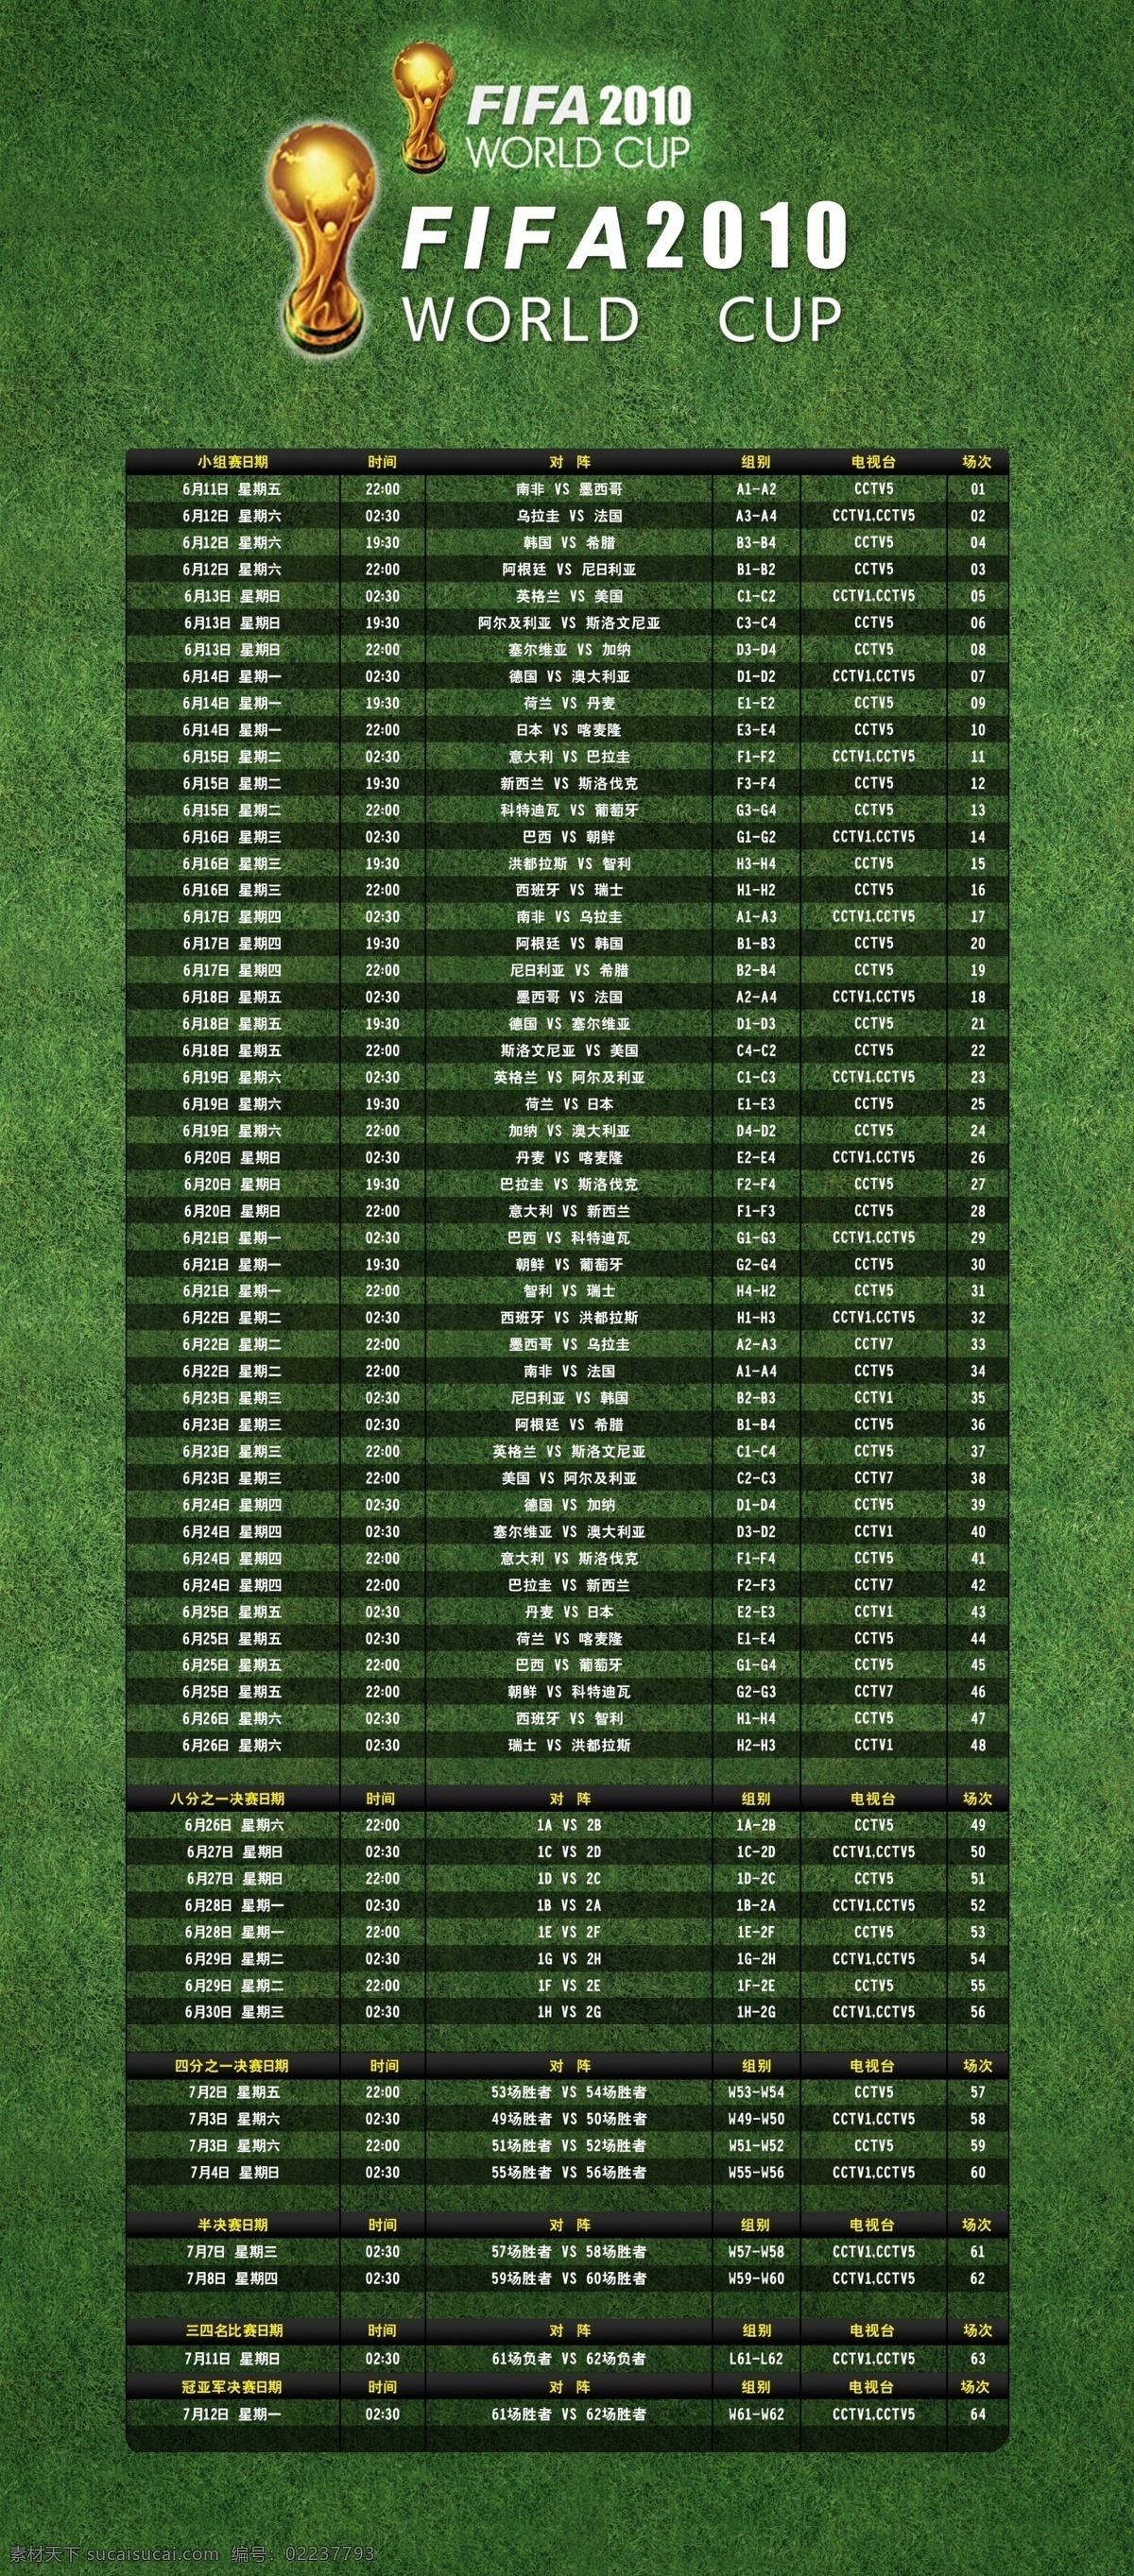 草地 广告设计模板 世界杯 世界杯海报 世界杯时间表 世界杯展架 源文件 展架 模板下载 2010 矢量图 日常生活